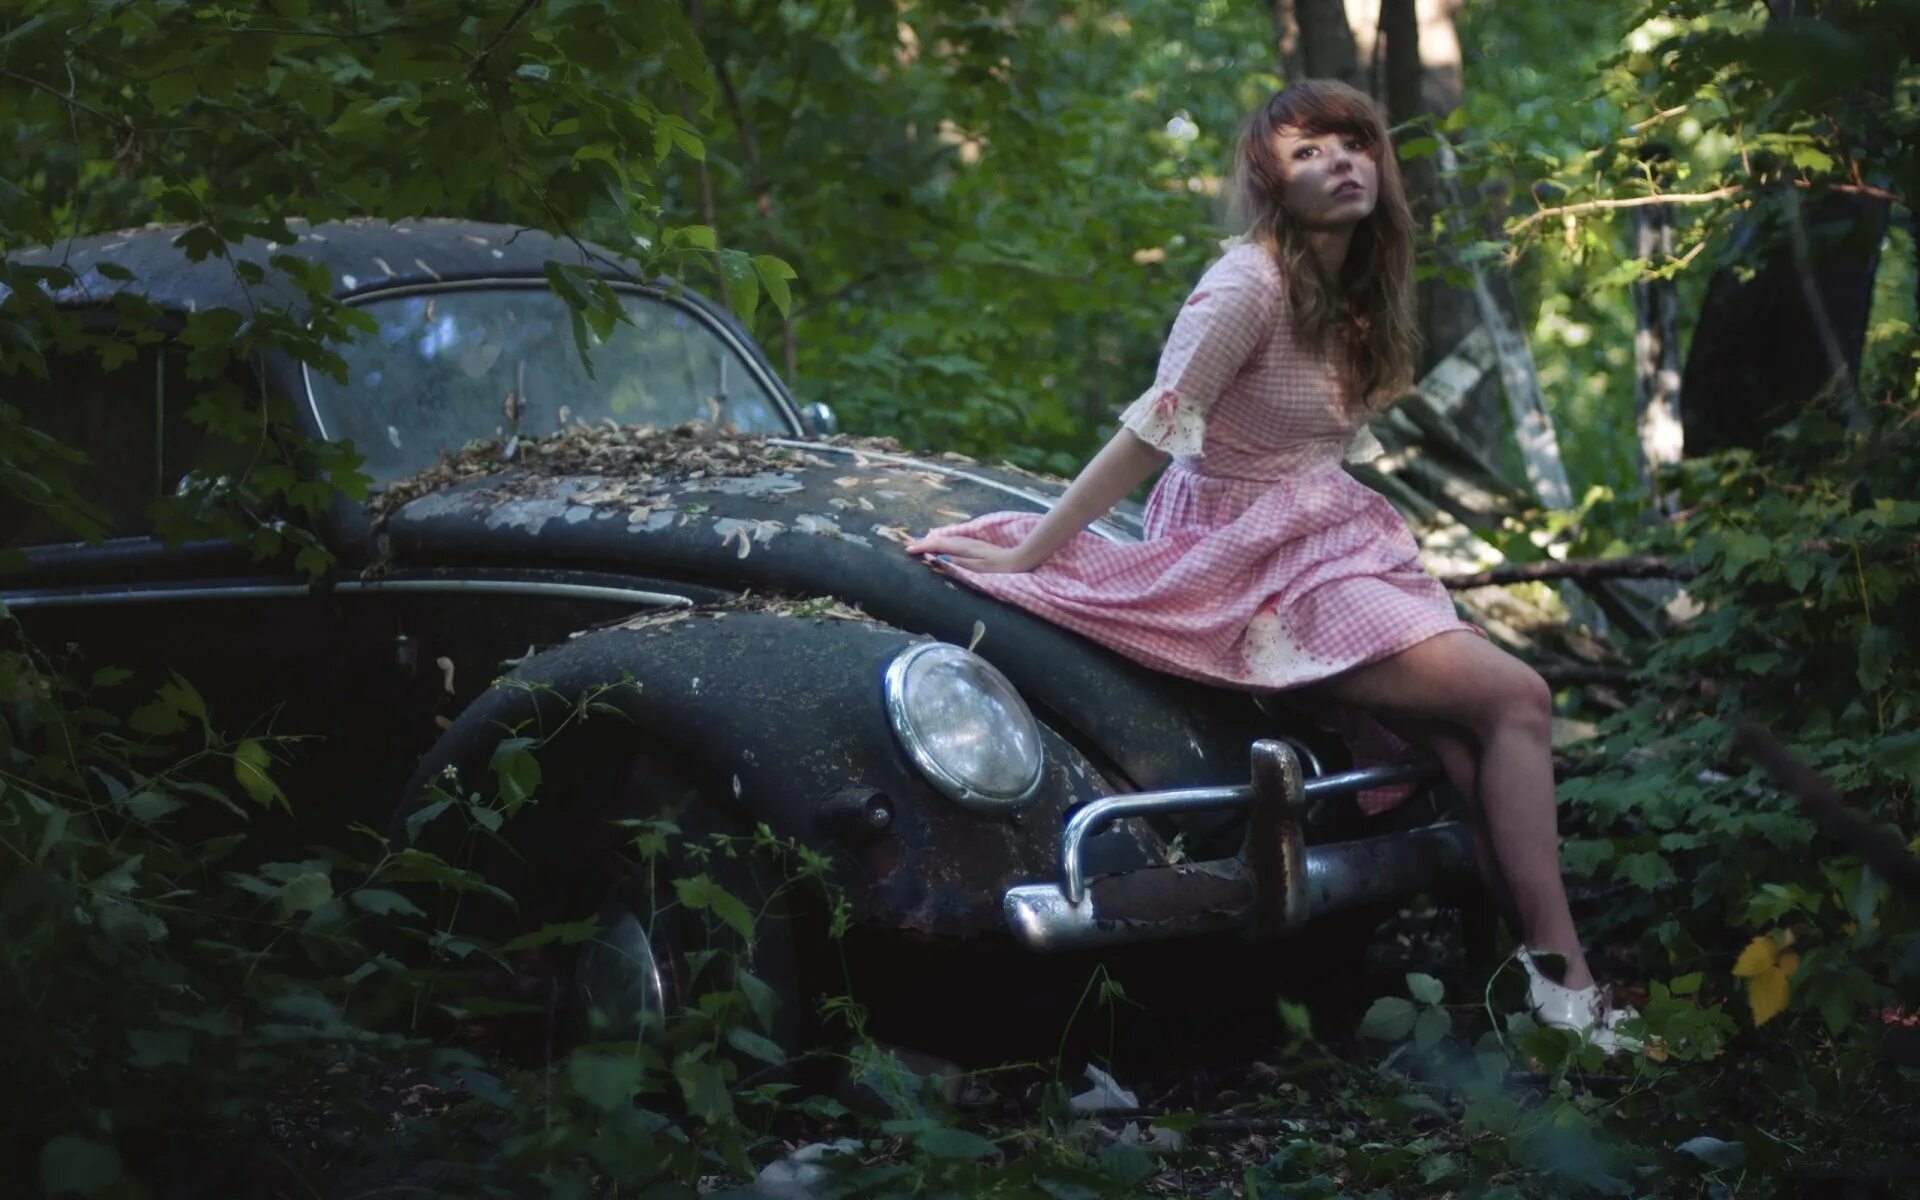 Капот в лесу. Фотосессия в лесу возле машины. Девушка в машине в лесу. Девушка в машине на природе. Фотосессия машины и девушки с цветами в лесу.